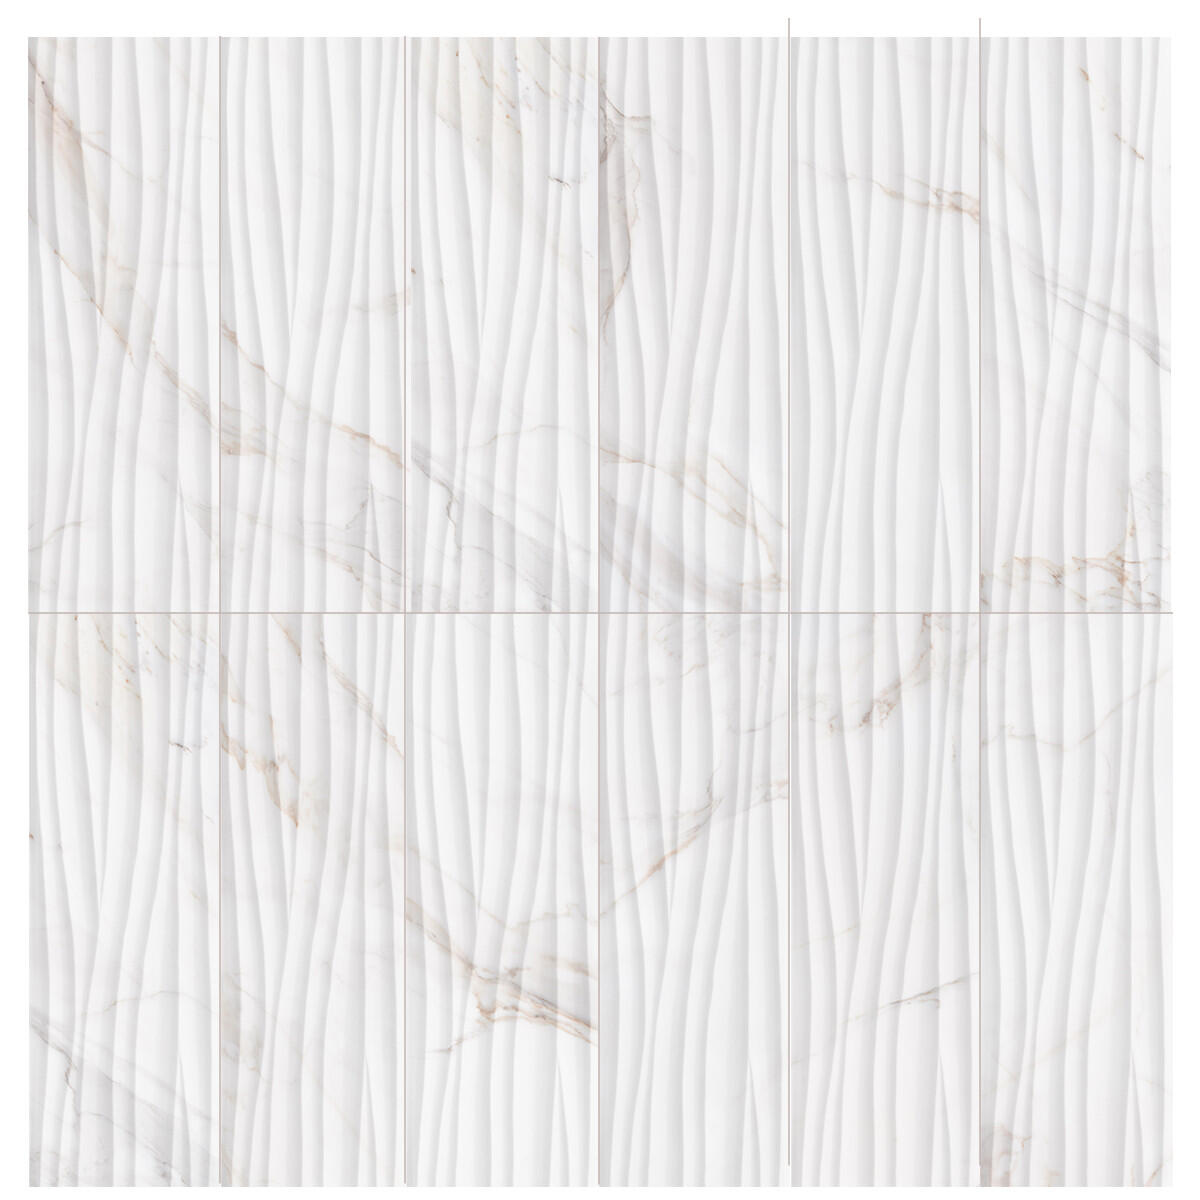 Piastrella per rivestimenti Marmorea Abaco Cal 31.5 x 100 cm sp. 8.7 mm bianco - 2